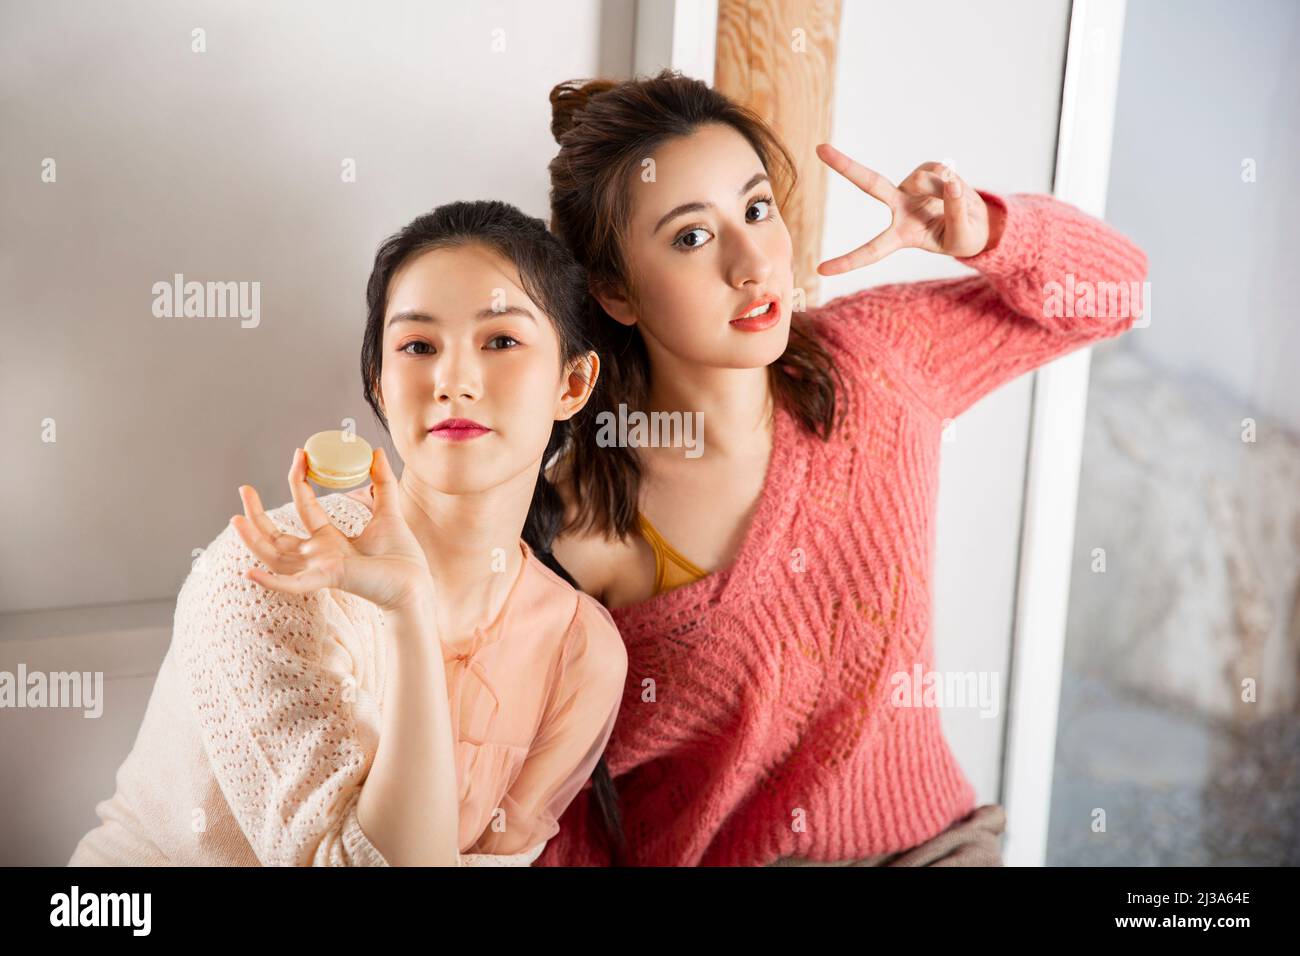 Modische junge chinesische Damen bereit, für ein Gruppenfoto bei Tee-Zeit posieren - Stock Foto Stockfoto